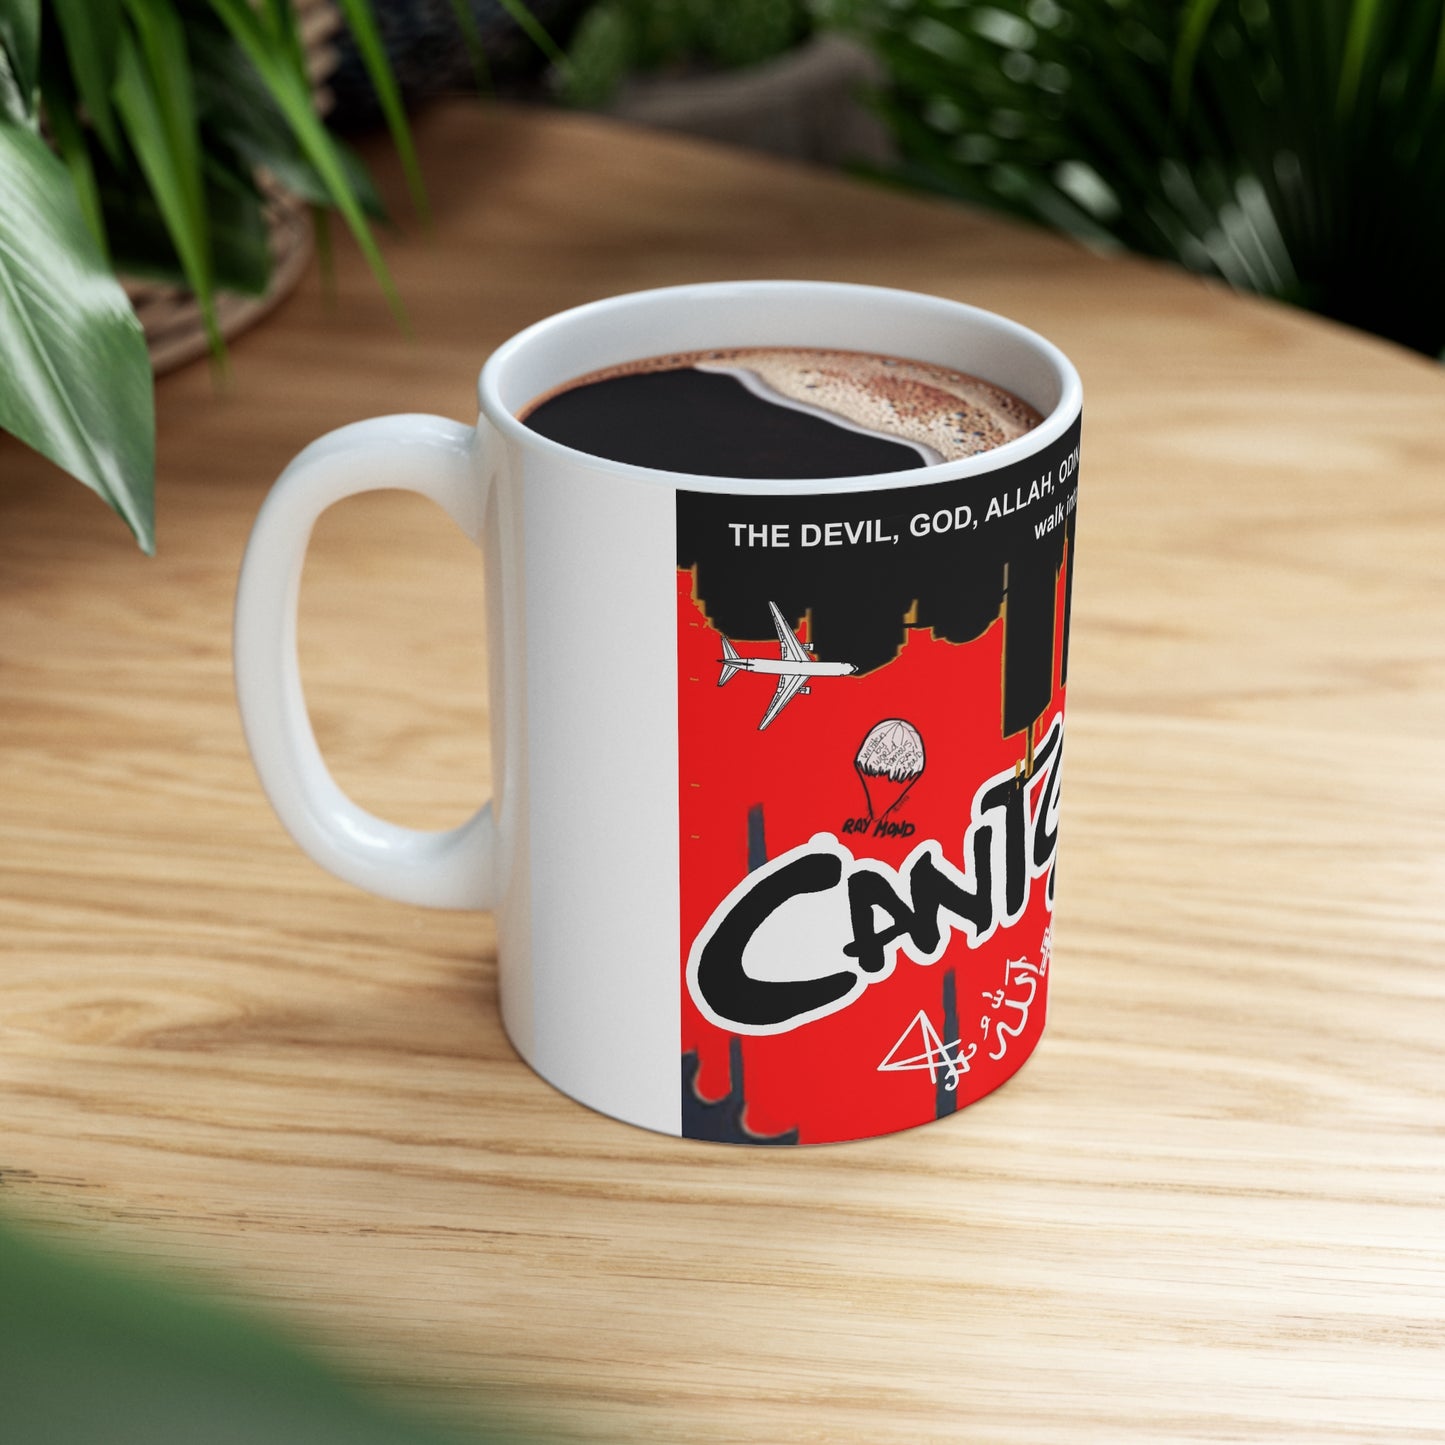 CantGetRite Ceramic Mug 11oz